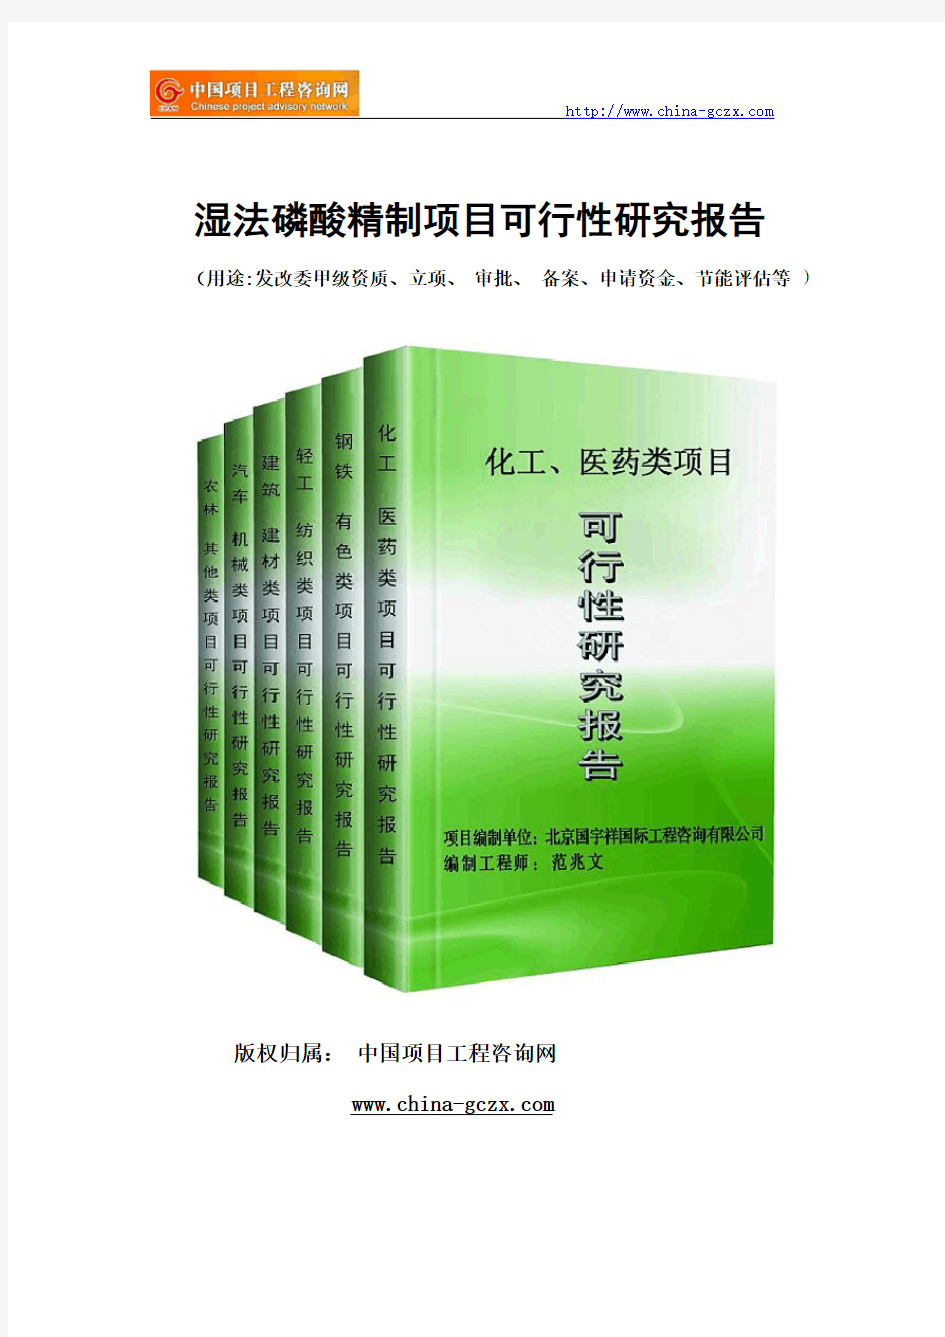 湿法磷酸精制项目可行性研究报告(专业经典案例)